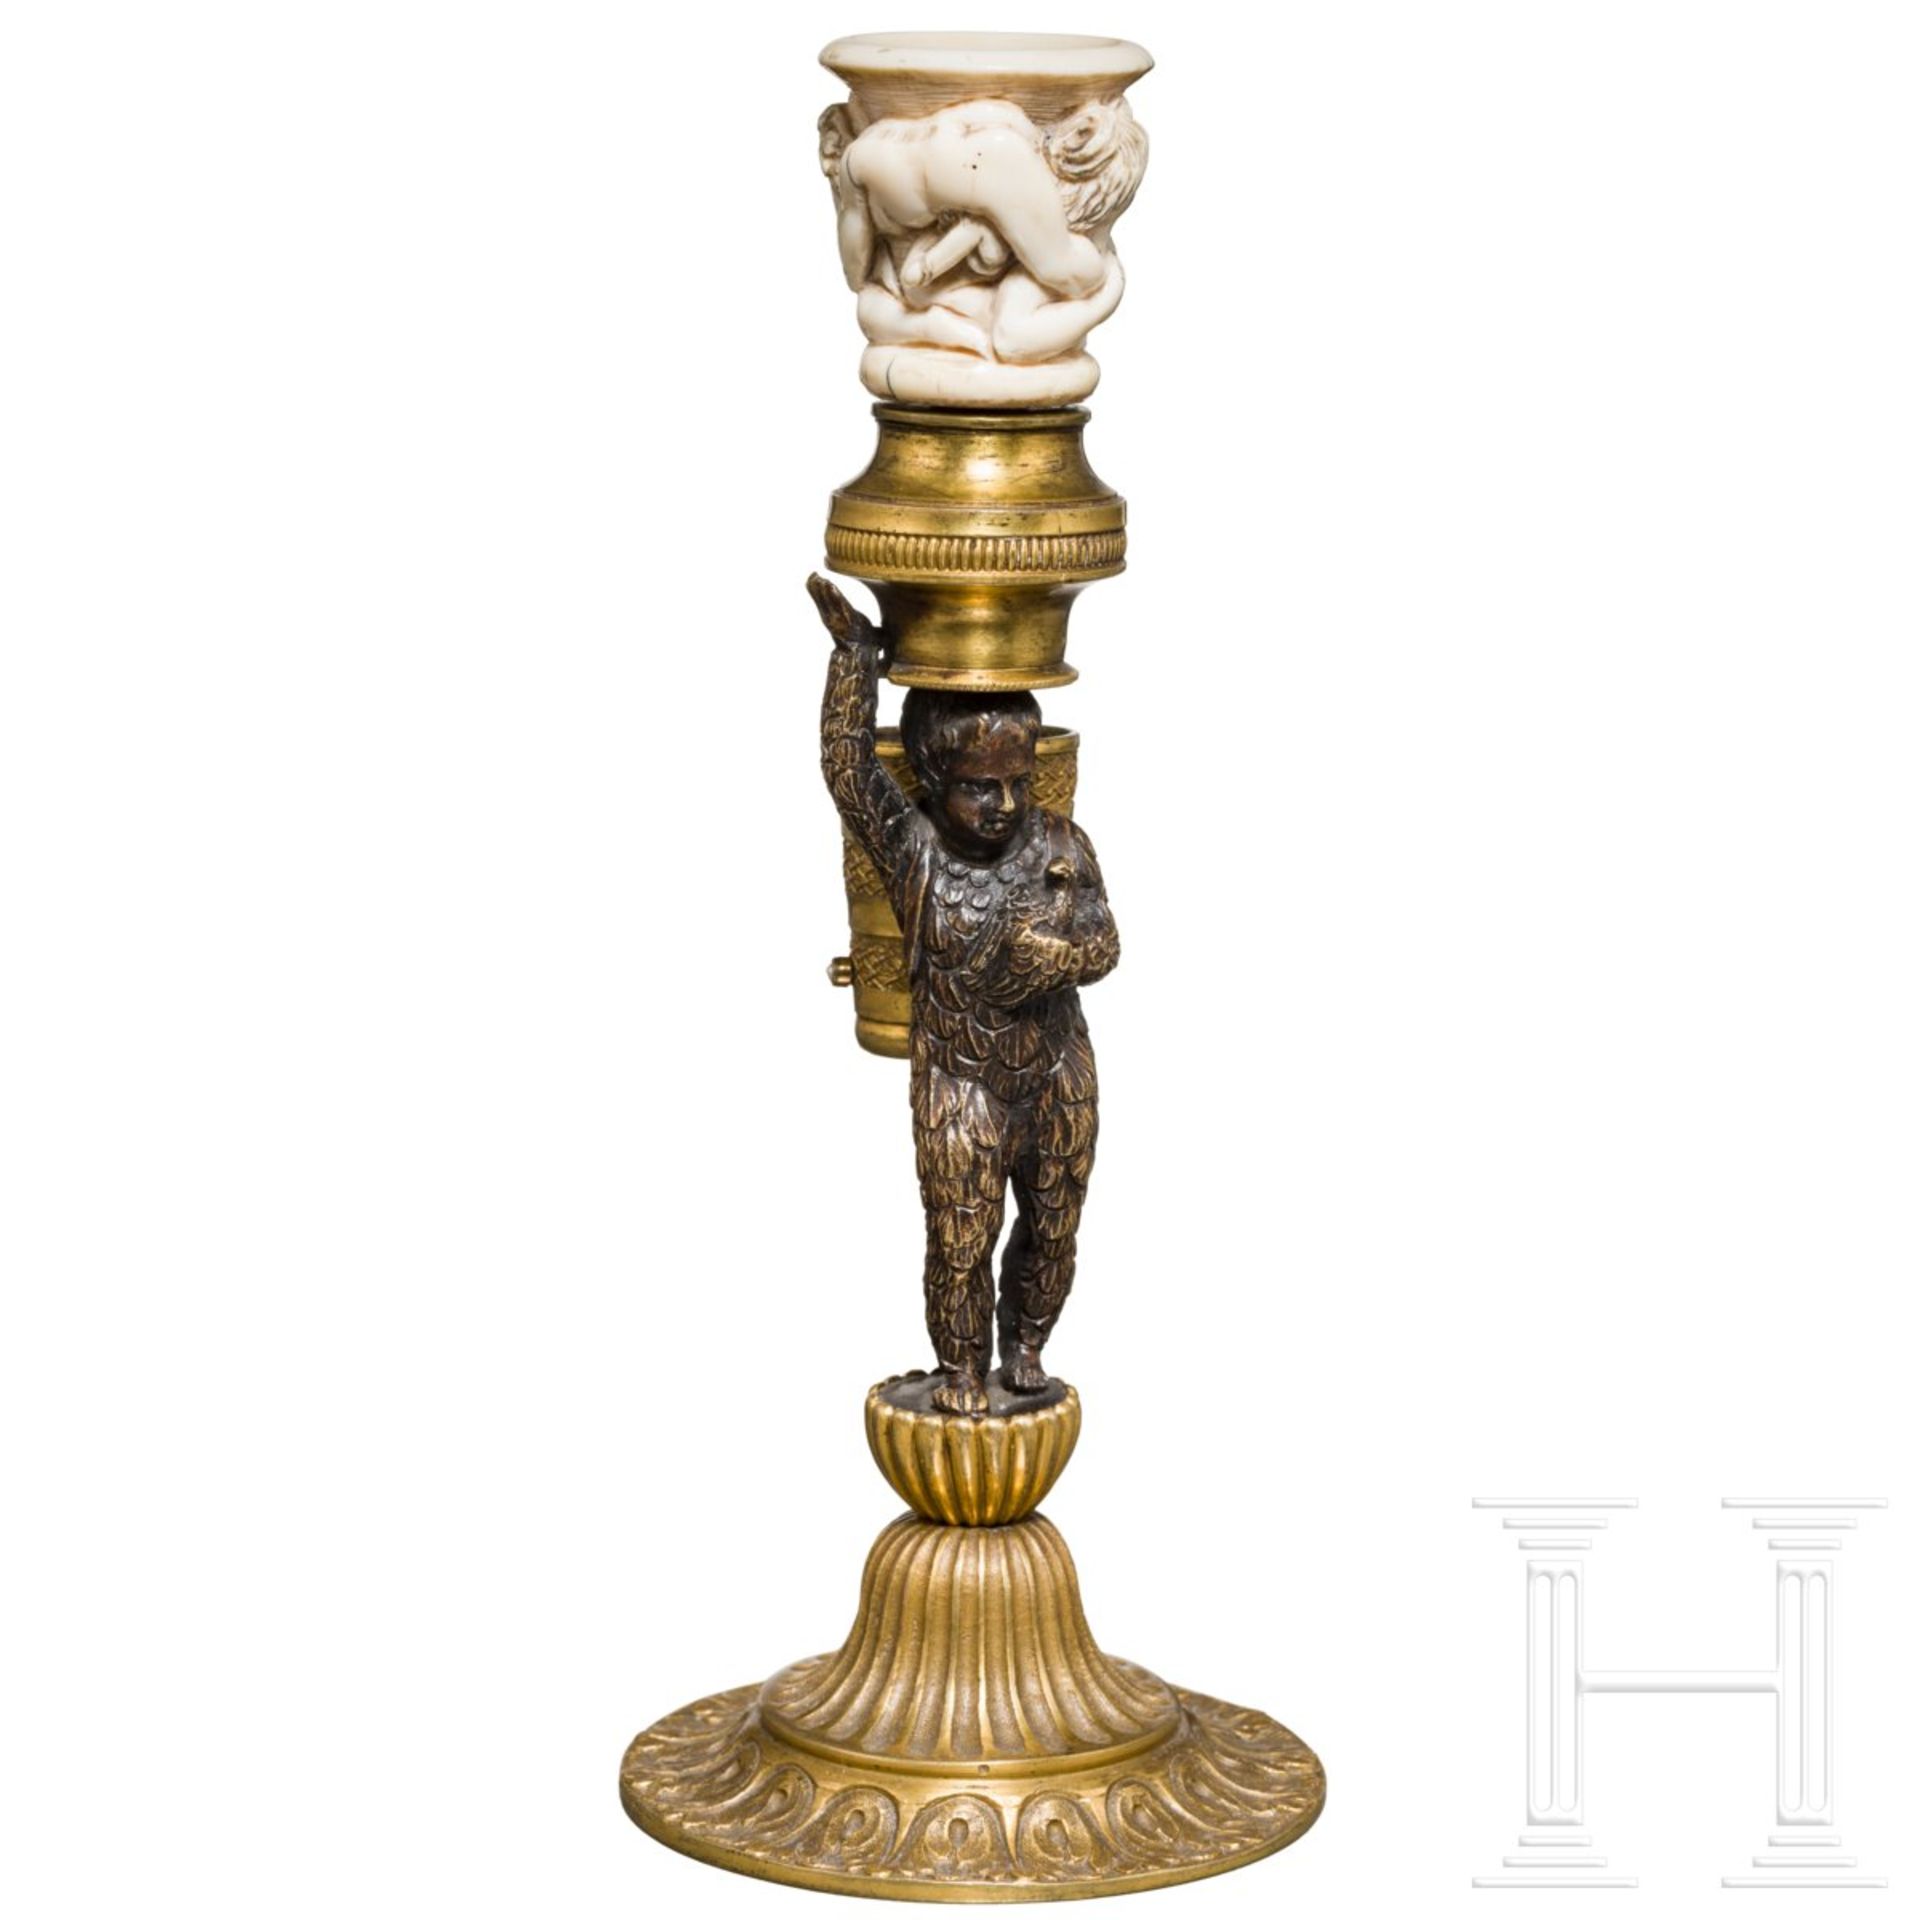 Kleiner klassizistischer Leuchter, deutsch, um 1800Vergoldete und dunkel patinierte Bronze, teils